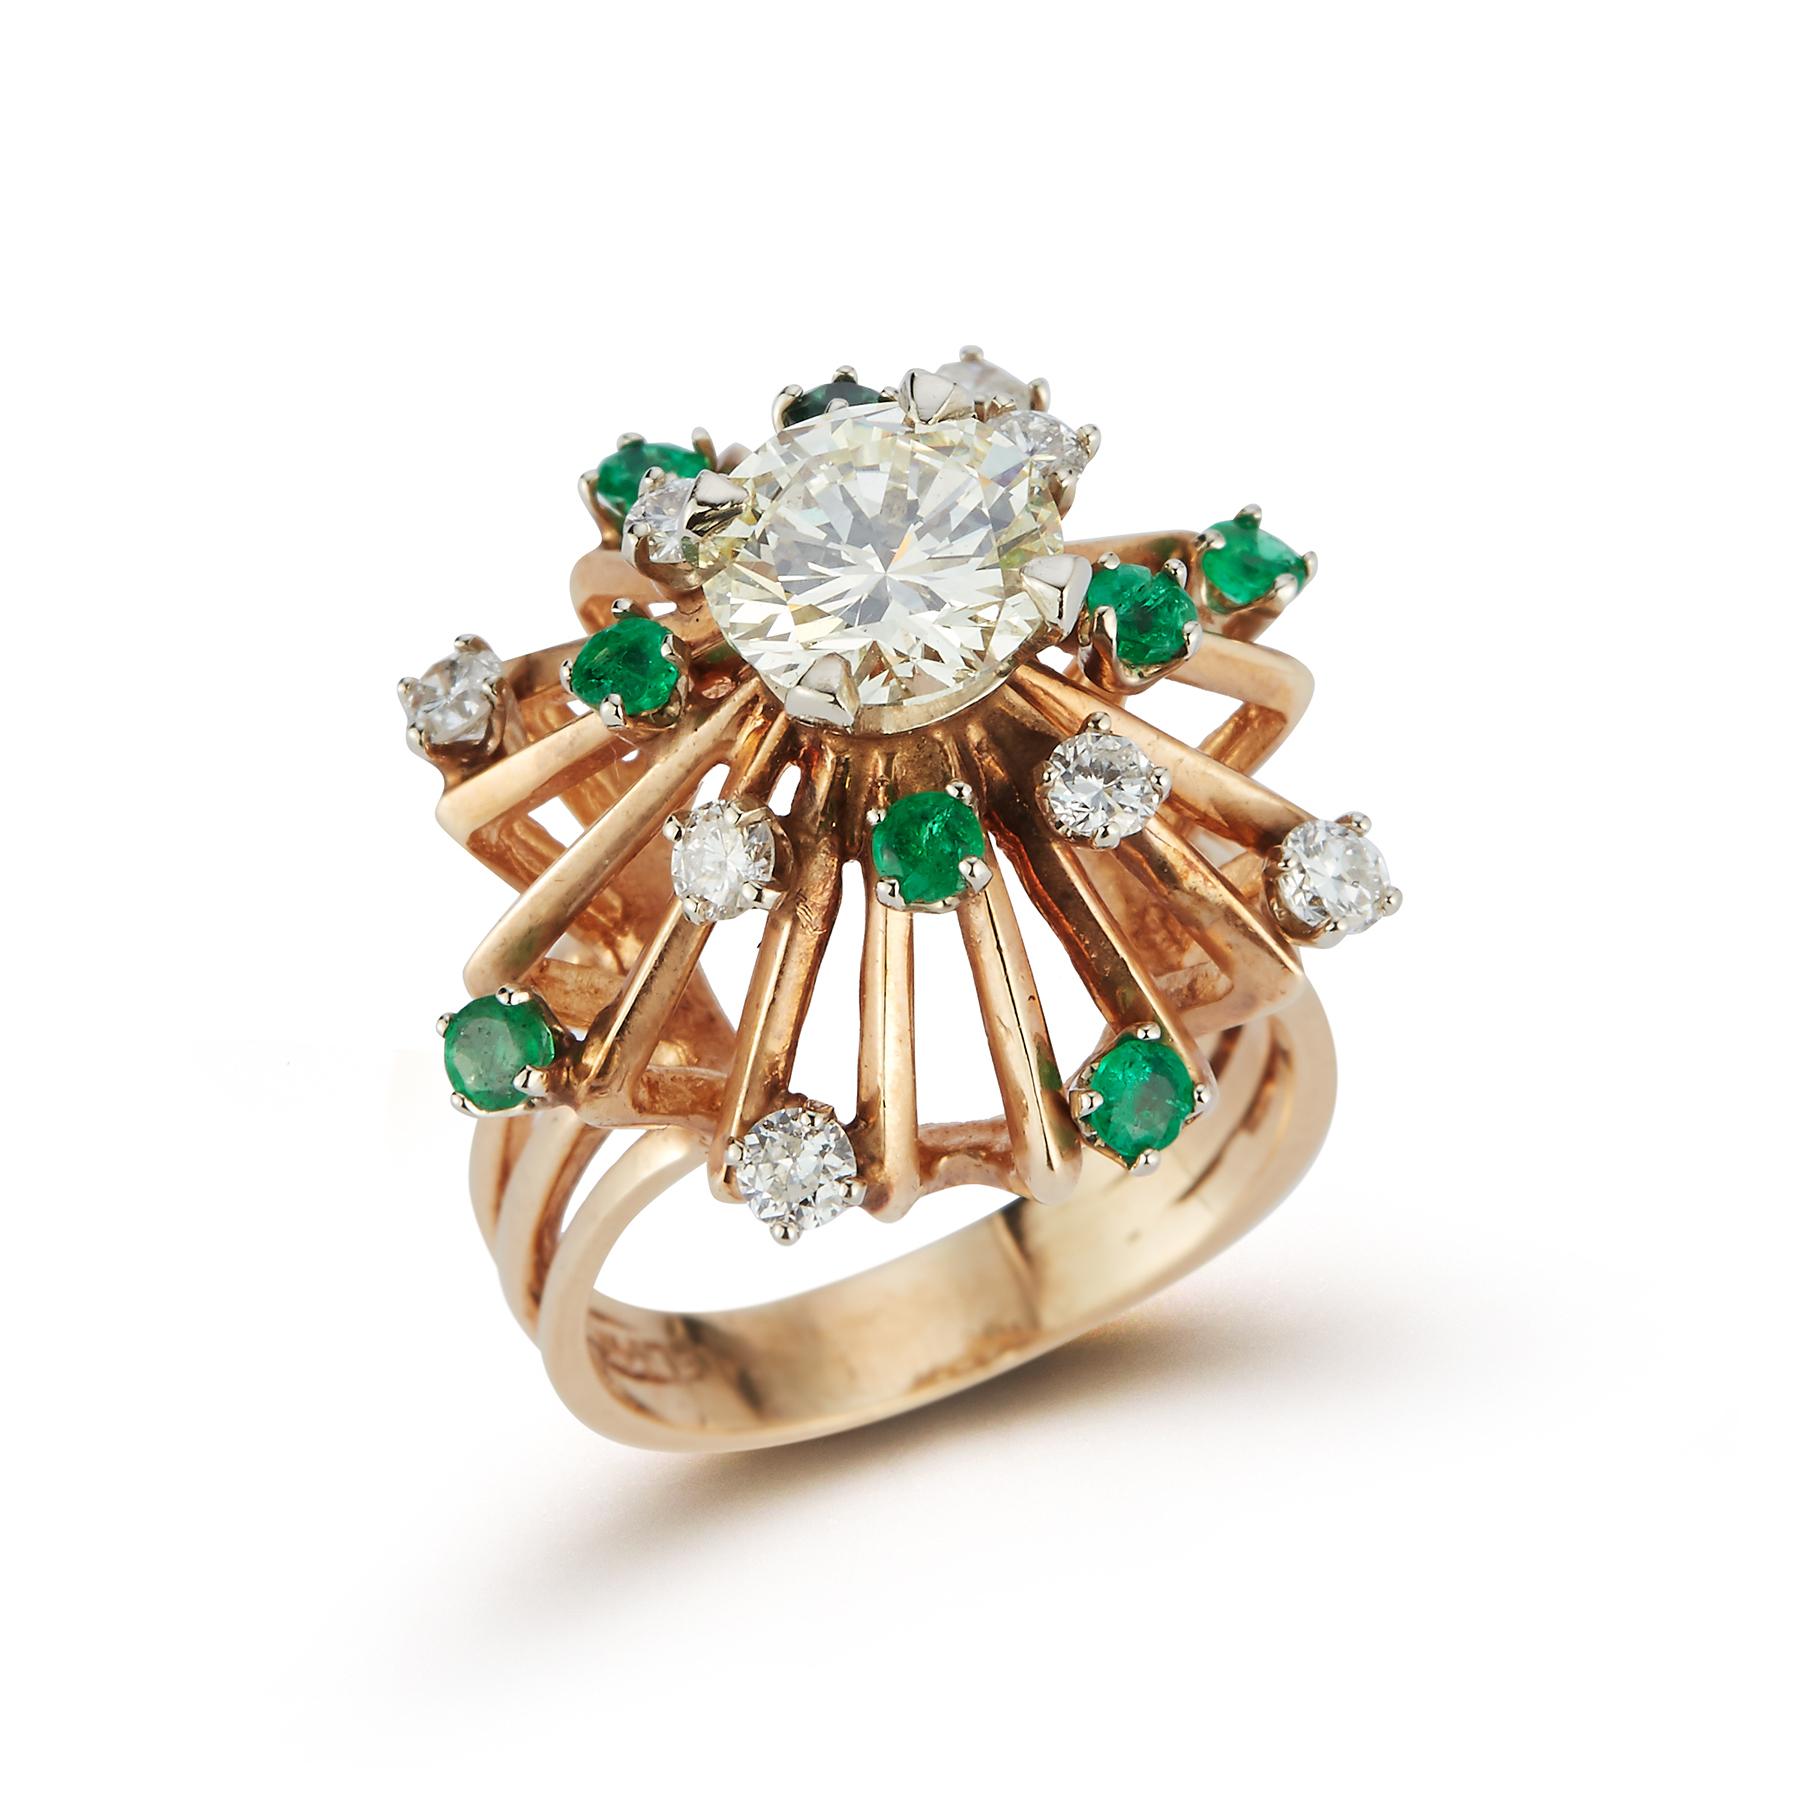 Retro Diamant & Smaragd Cocktail Ring 
1 rund geschliffener zentraler Diamant von ca. 1,55 Karat, umgeben von rund geschliffenen Smaragden und Diamanten 
gewicht des Smaragds: etwa 0,40 Karat 
gewicht des Diamanten: ca. 0,45 Karat 
Ringgröße: 5.5